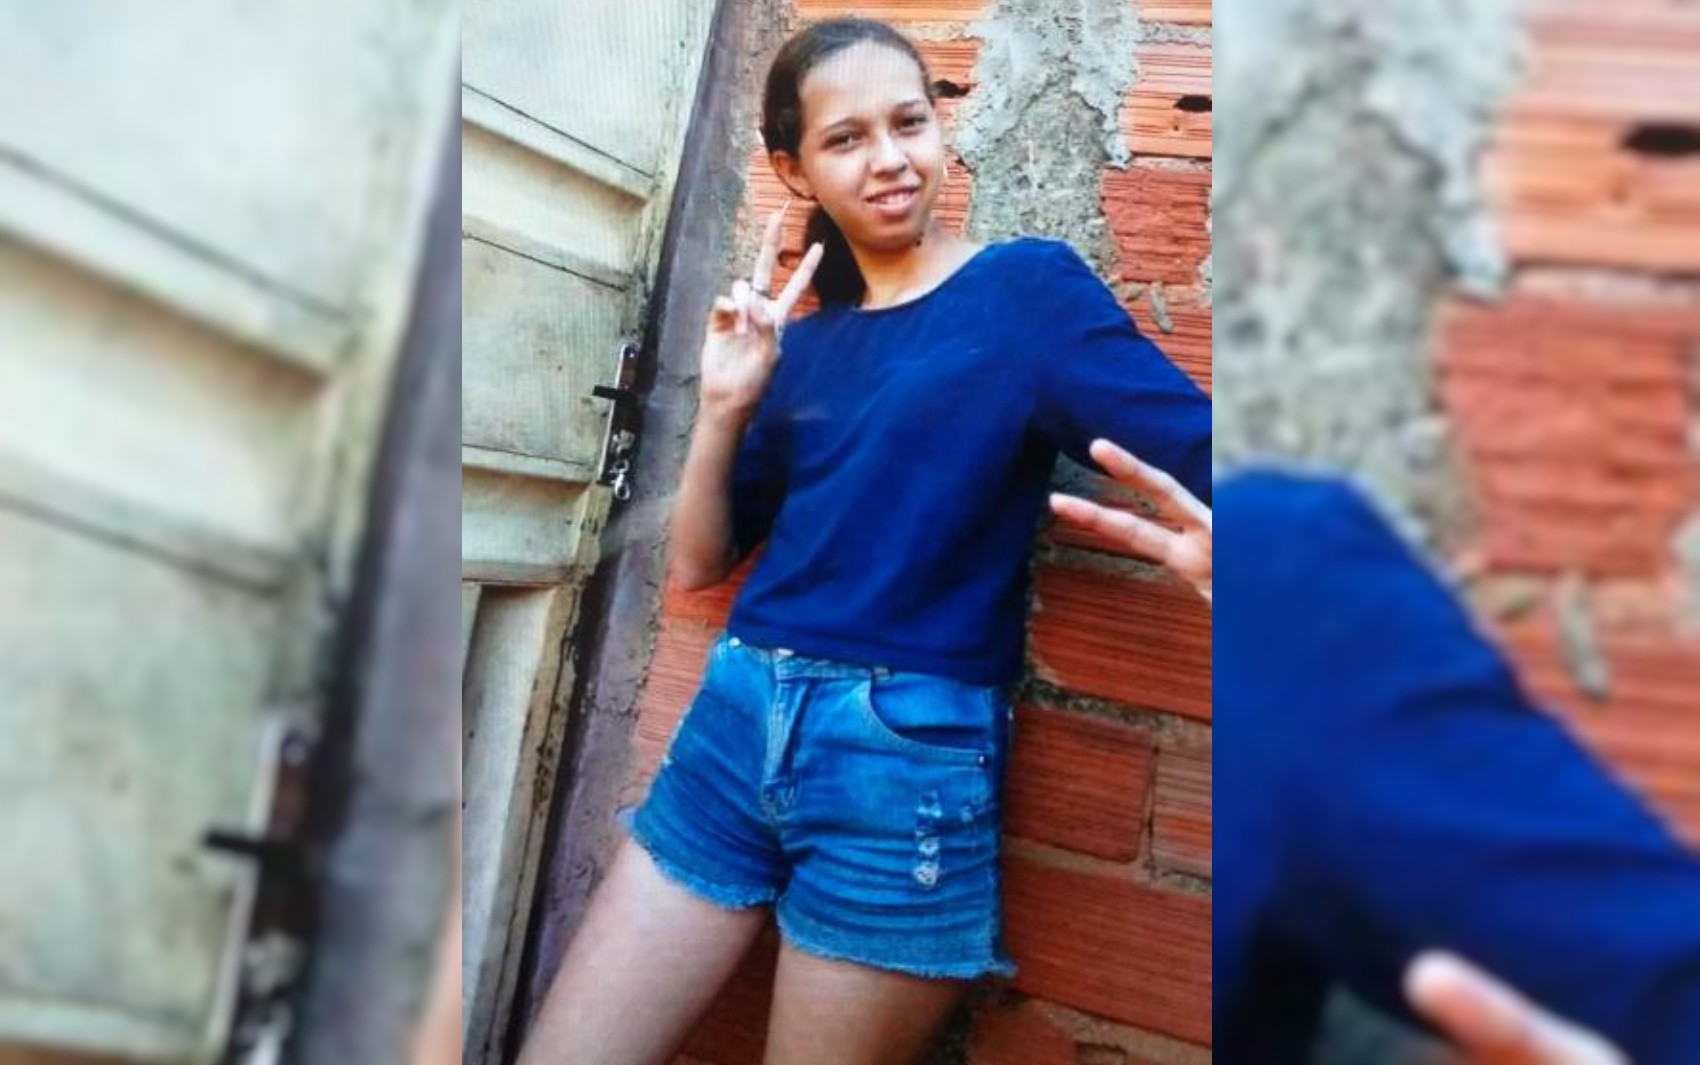 Ajudante de pedreiro que confessou ter matado Luana Marcelo é investigado pelo sumiço de outra menina, em Goiânia